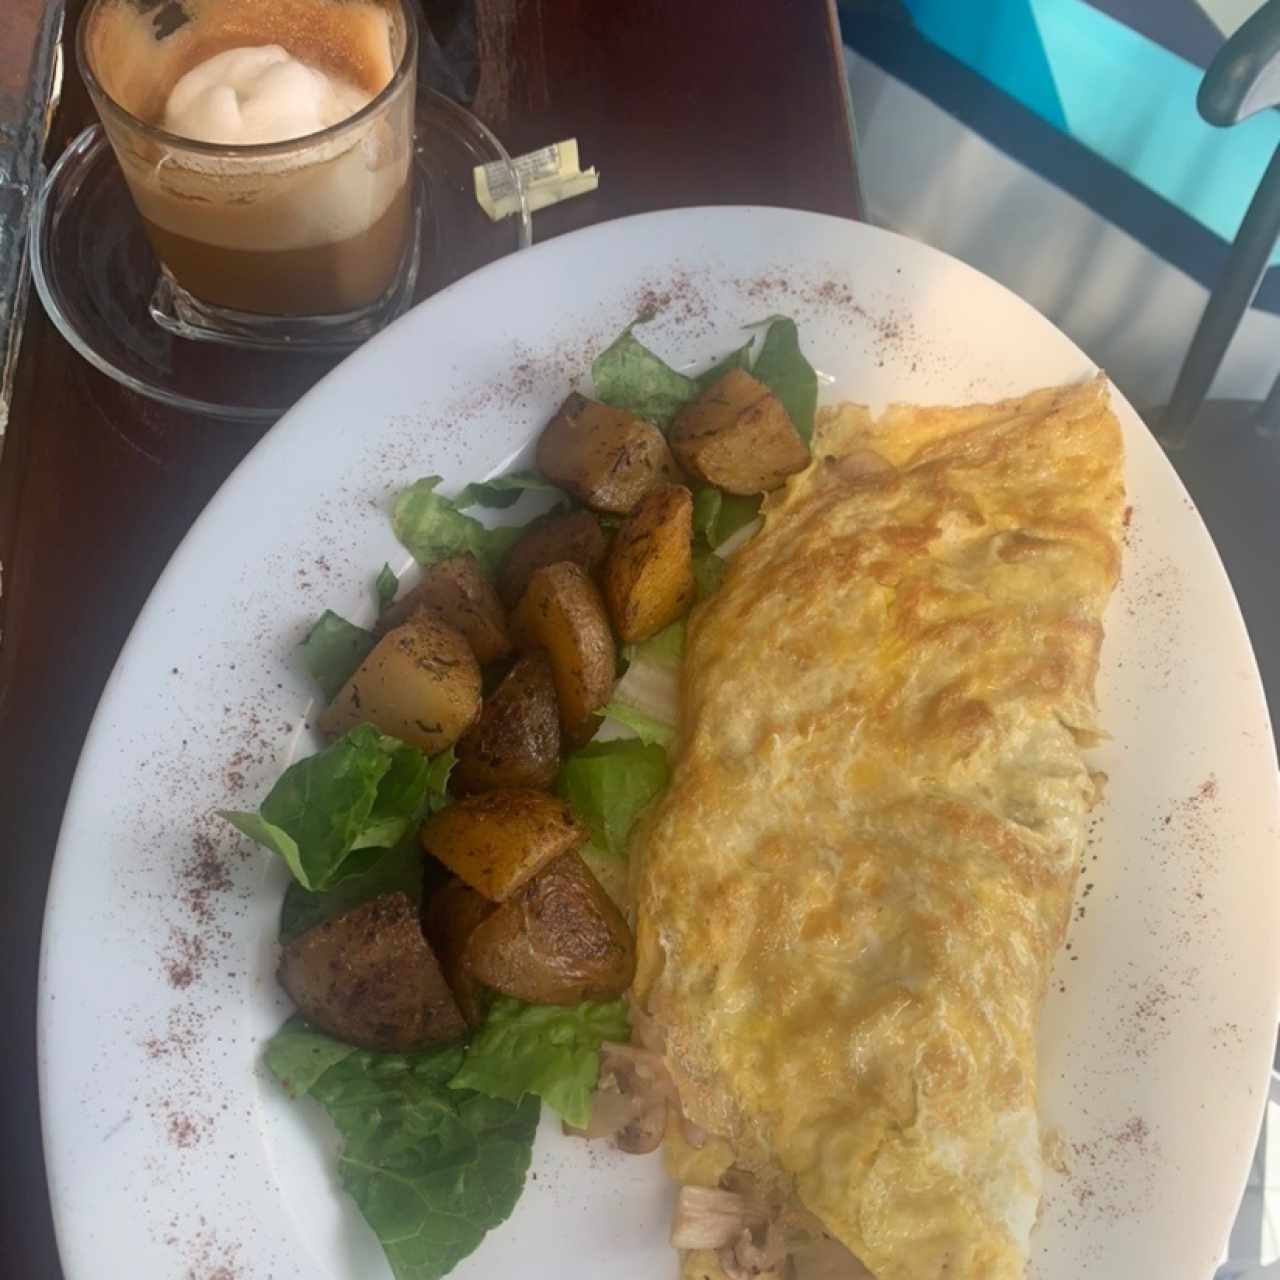 Desayunos salados - western omelet